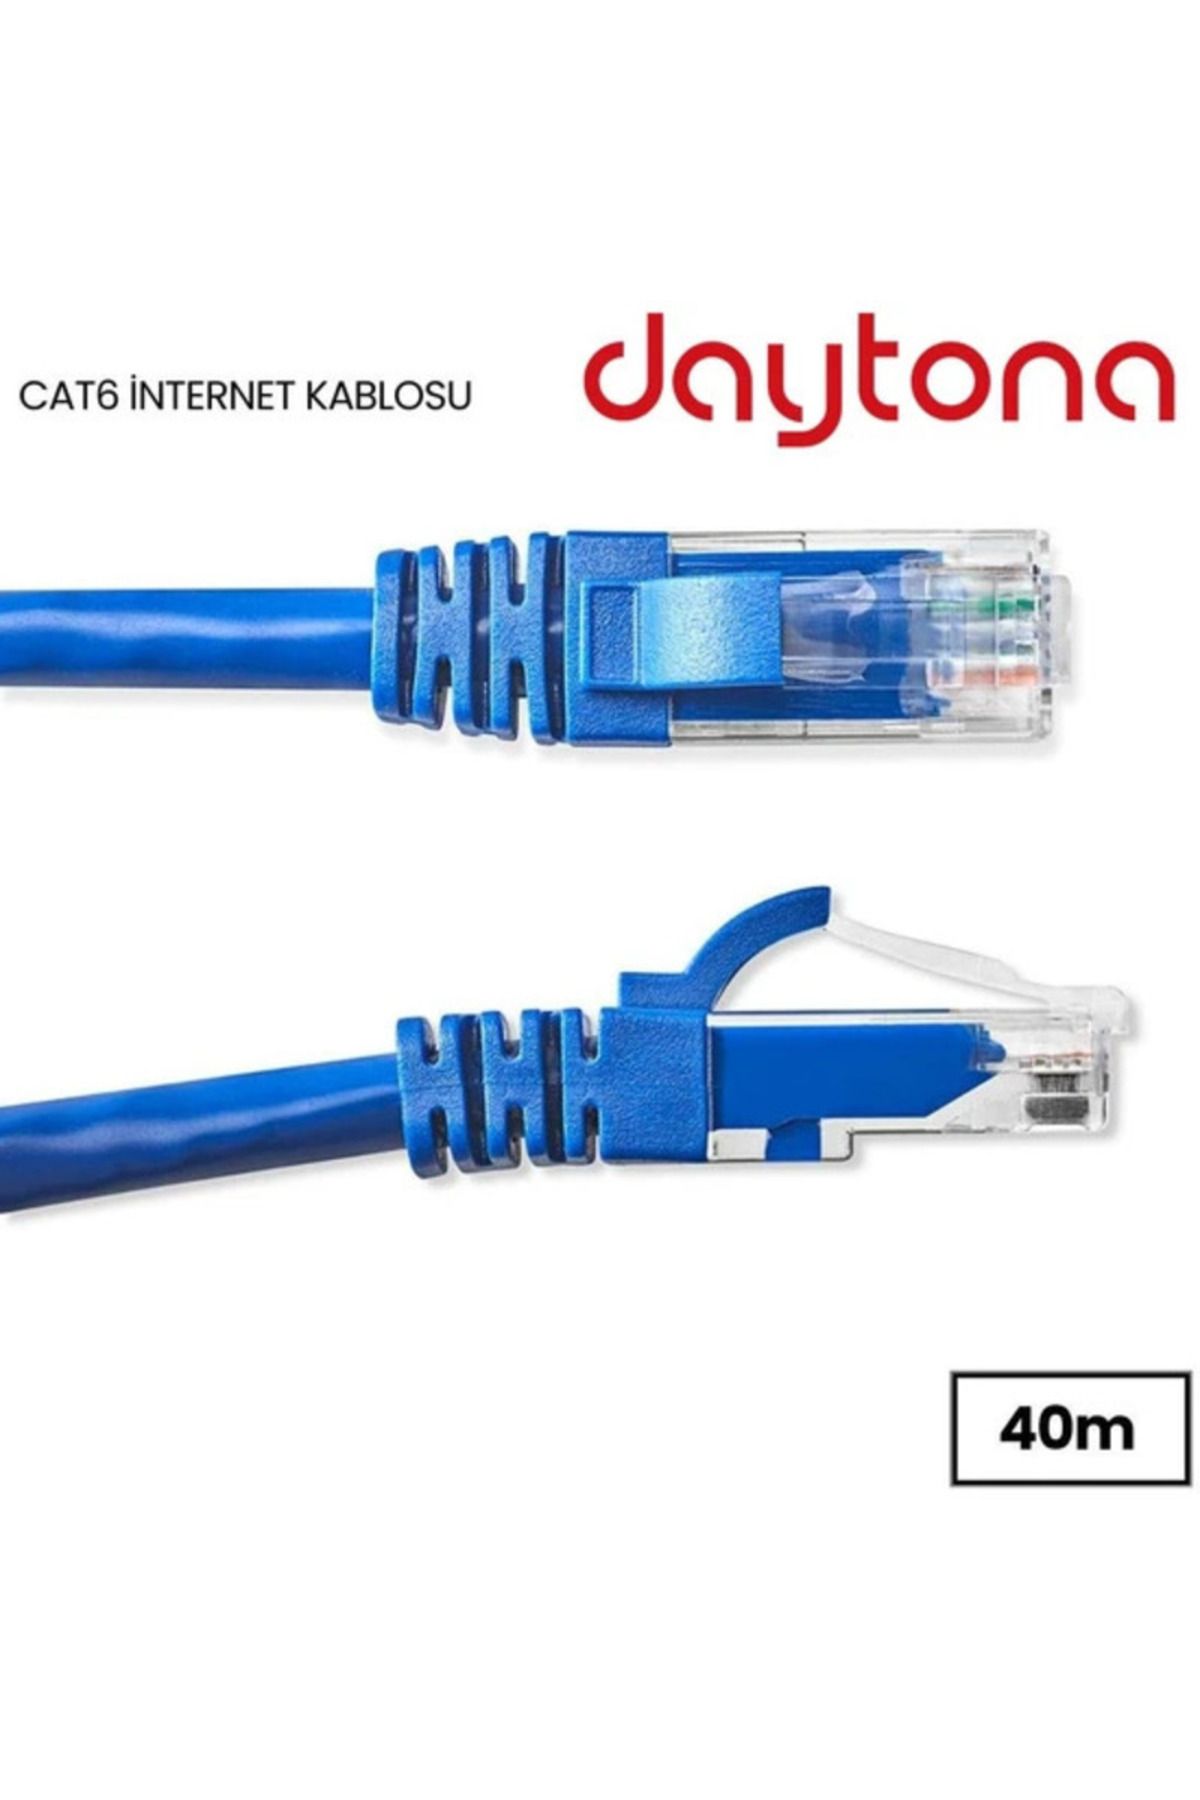 Daytona A4219 Cat6 Gigabit Internet Ethernet 10gbps Rj45 Lan Kablosu (40 METRE)